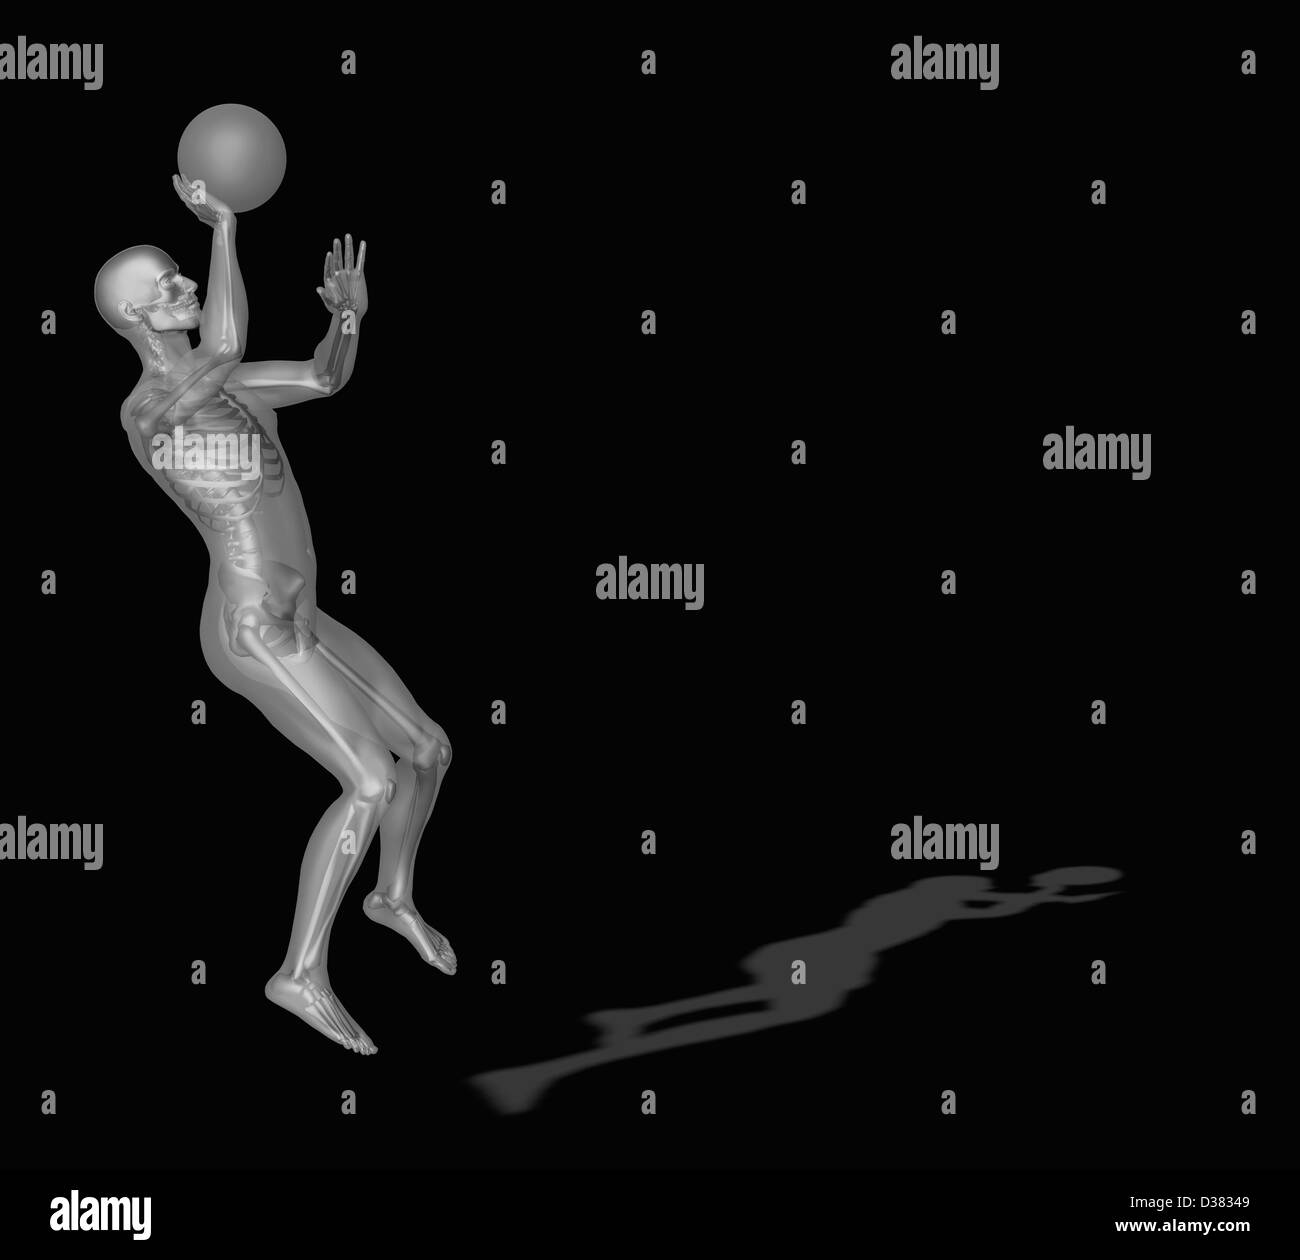 Generati digitalmente immagine della rappresentazione umana giocare a basket Foto Stock